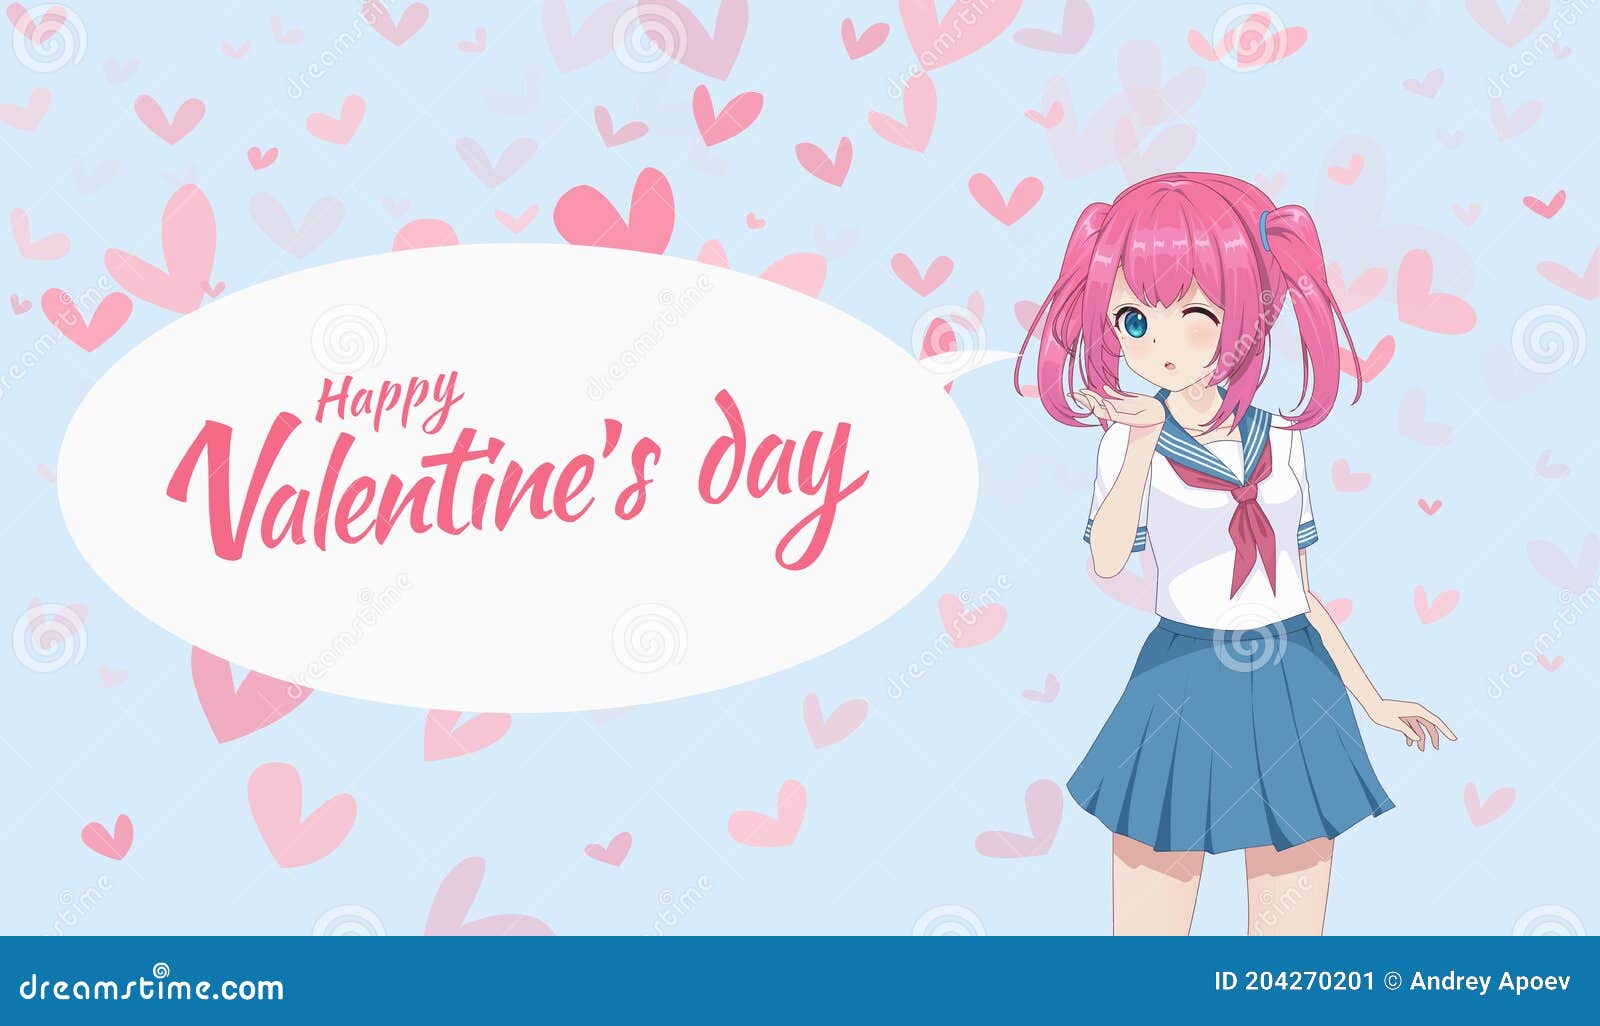 Send a Personalized Persona 5 Valentine